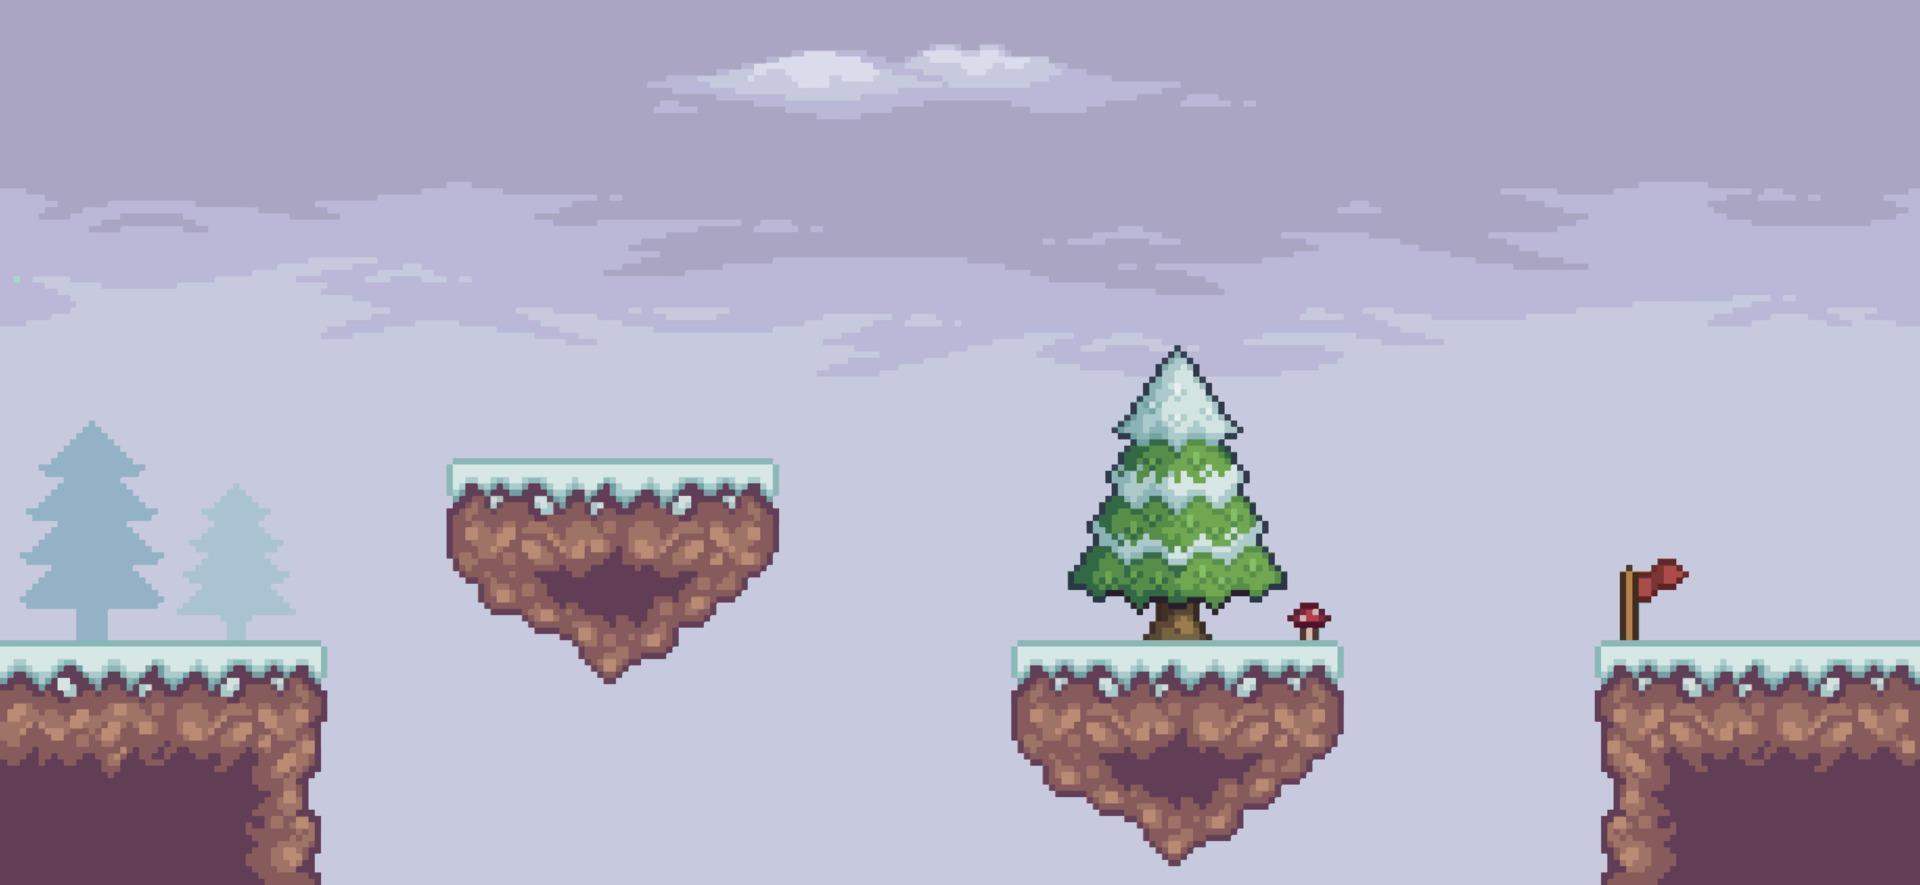 scène de jeu pixel art dans la neige avec plate-forme flottante, pins, nuages et arrière-plan 8 bits vecteur